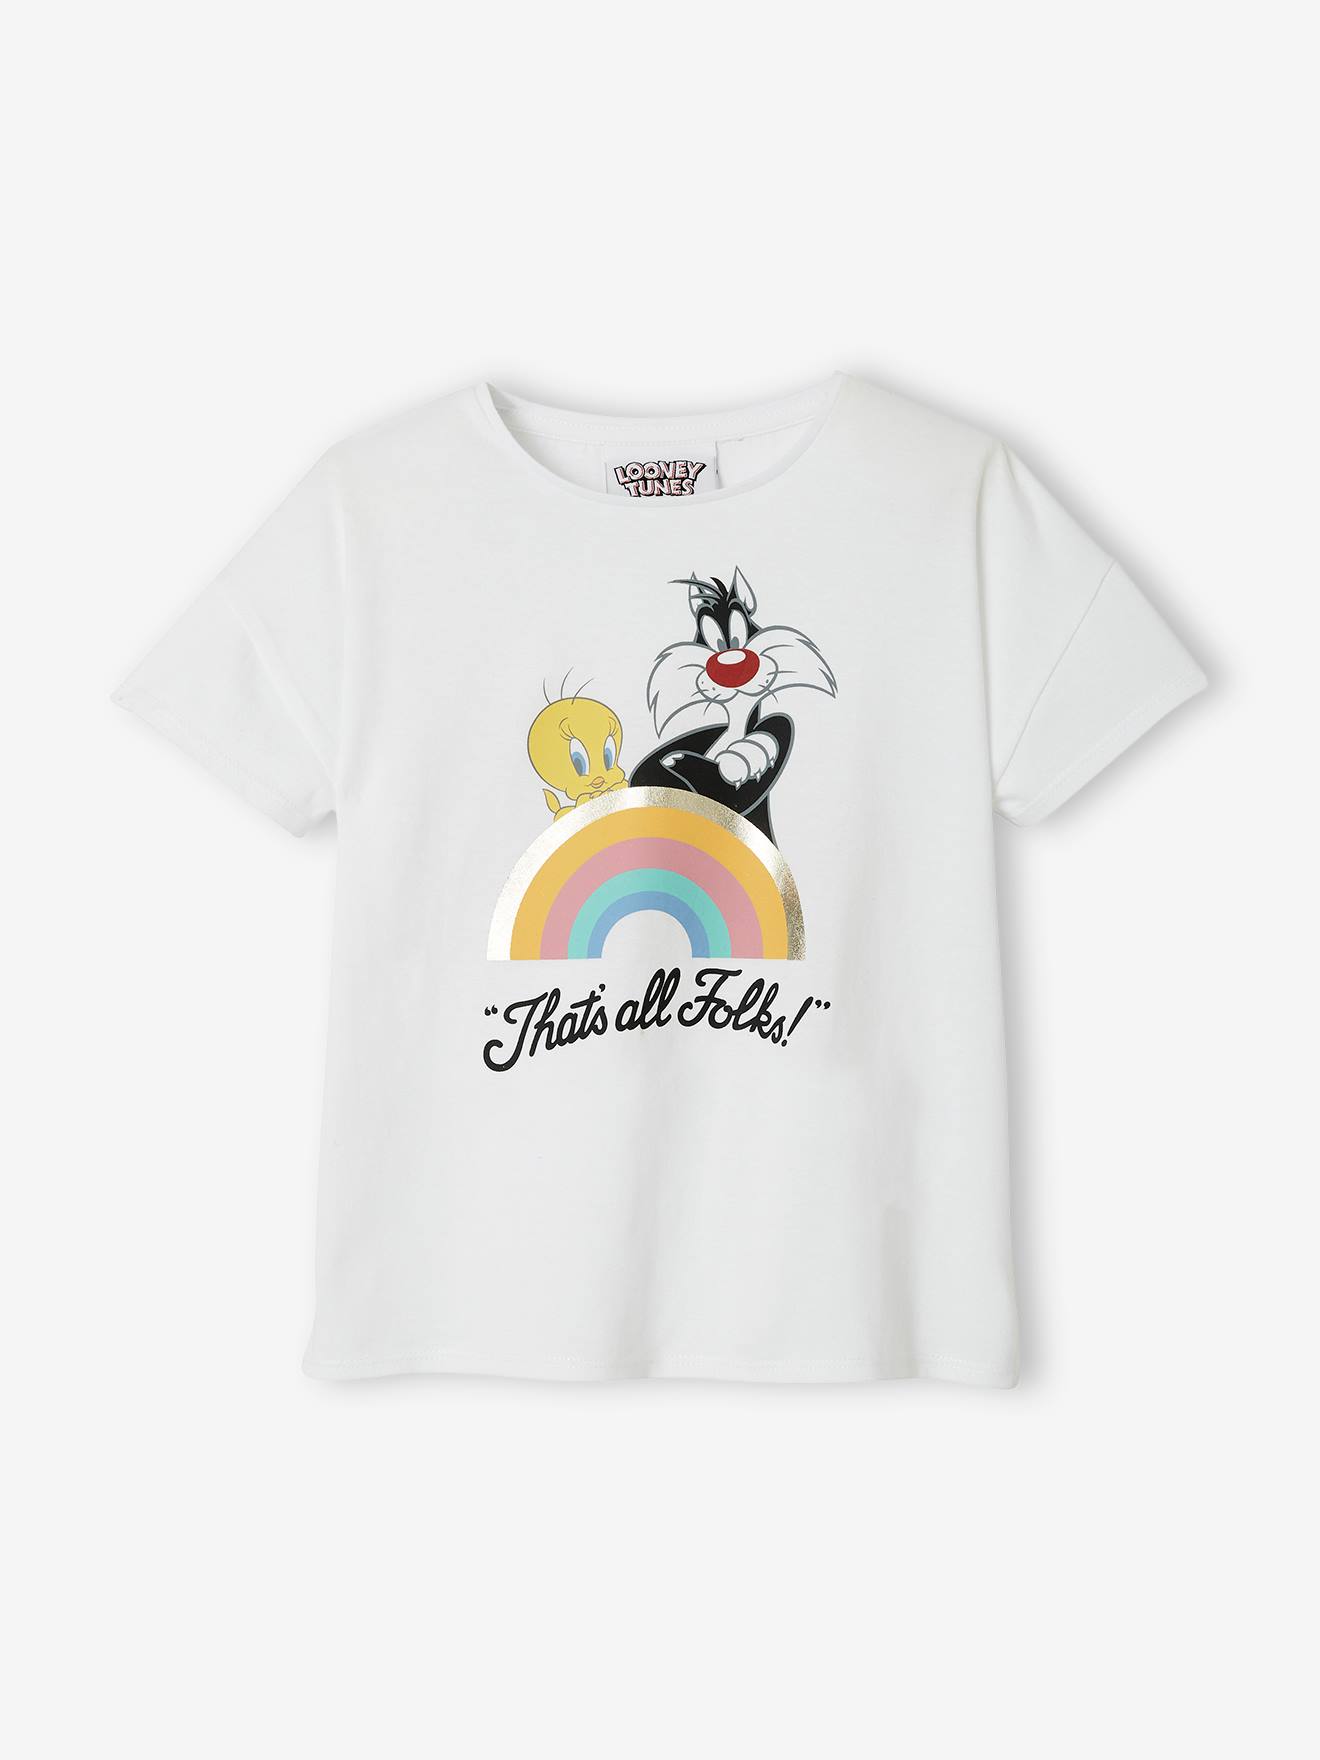 LONEY TUNES Camiseta Looney Tunes® Silvestre y Piolín blanco claro liso con motivos